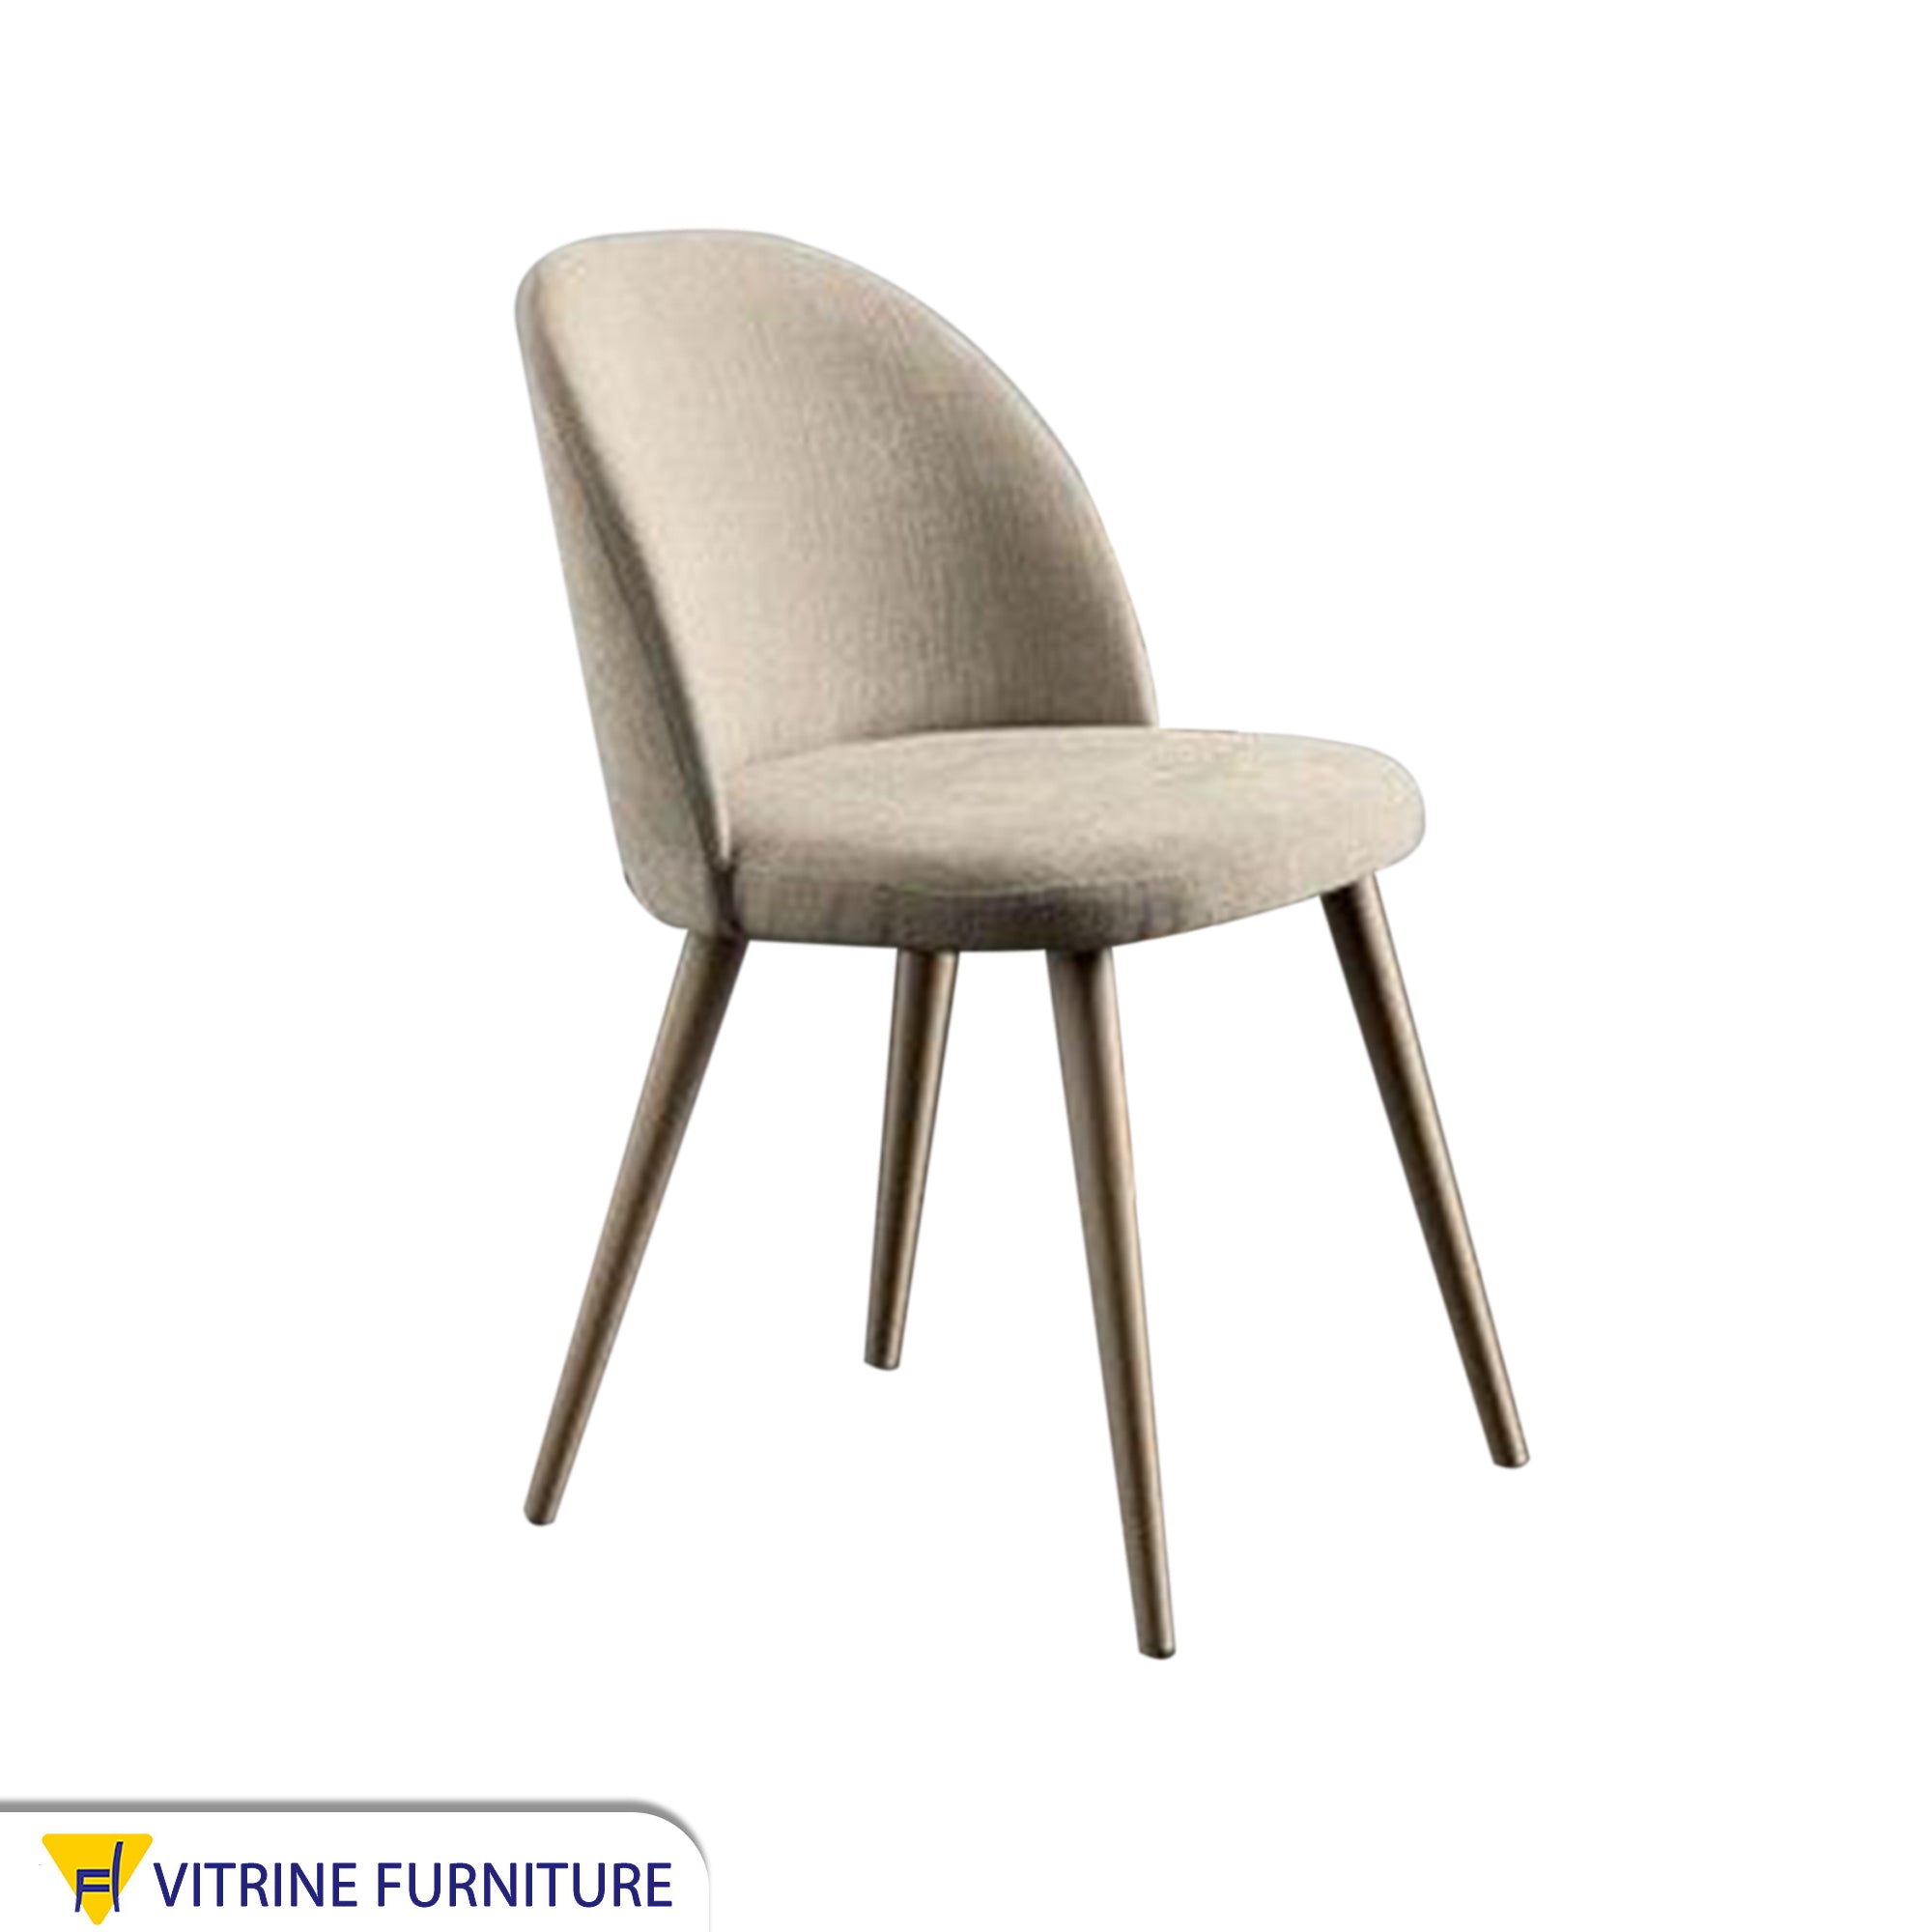 Modern upholstered chair